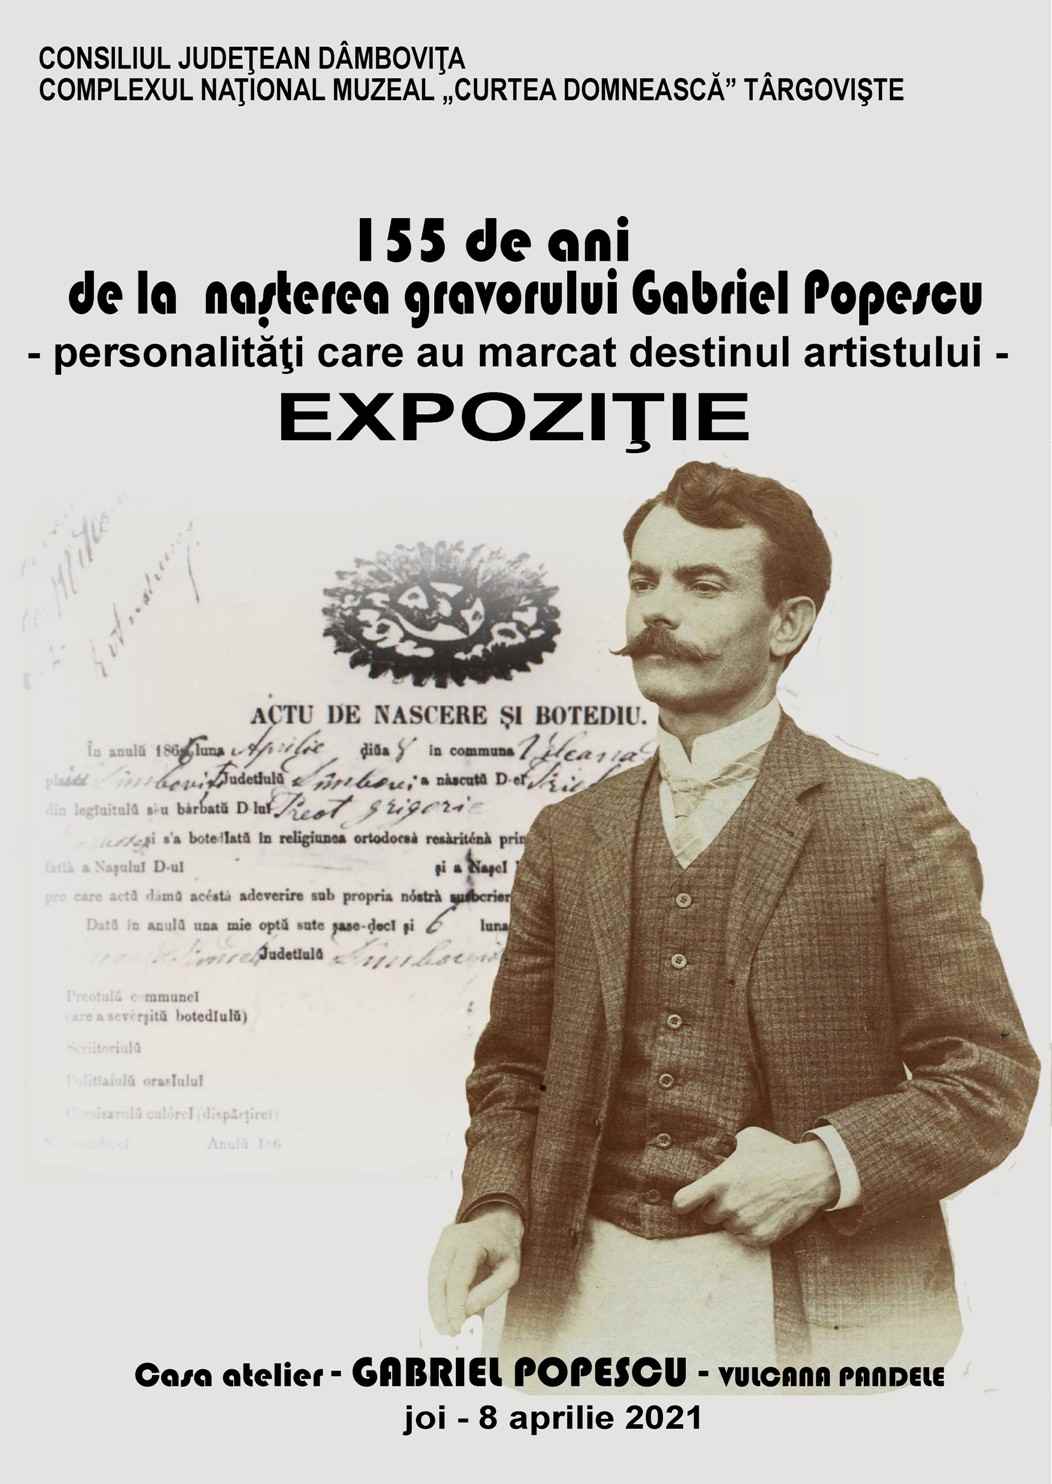  155 de ani de la naşterea gravorului Gabriel Popescu - personalităţi care au marcat destinul artistului